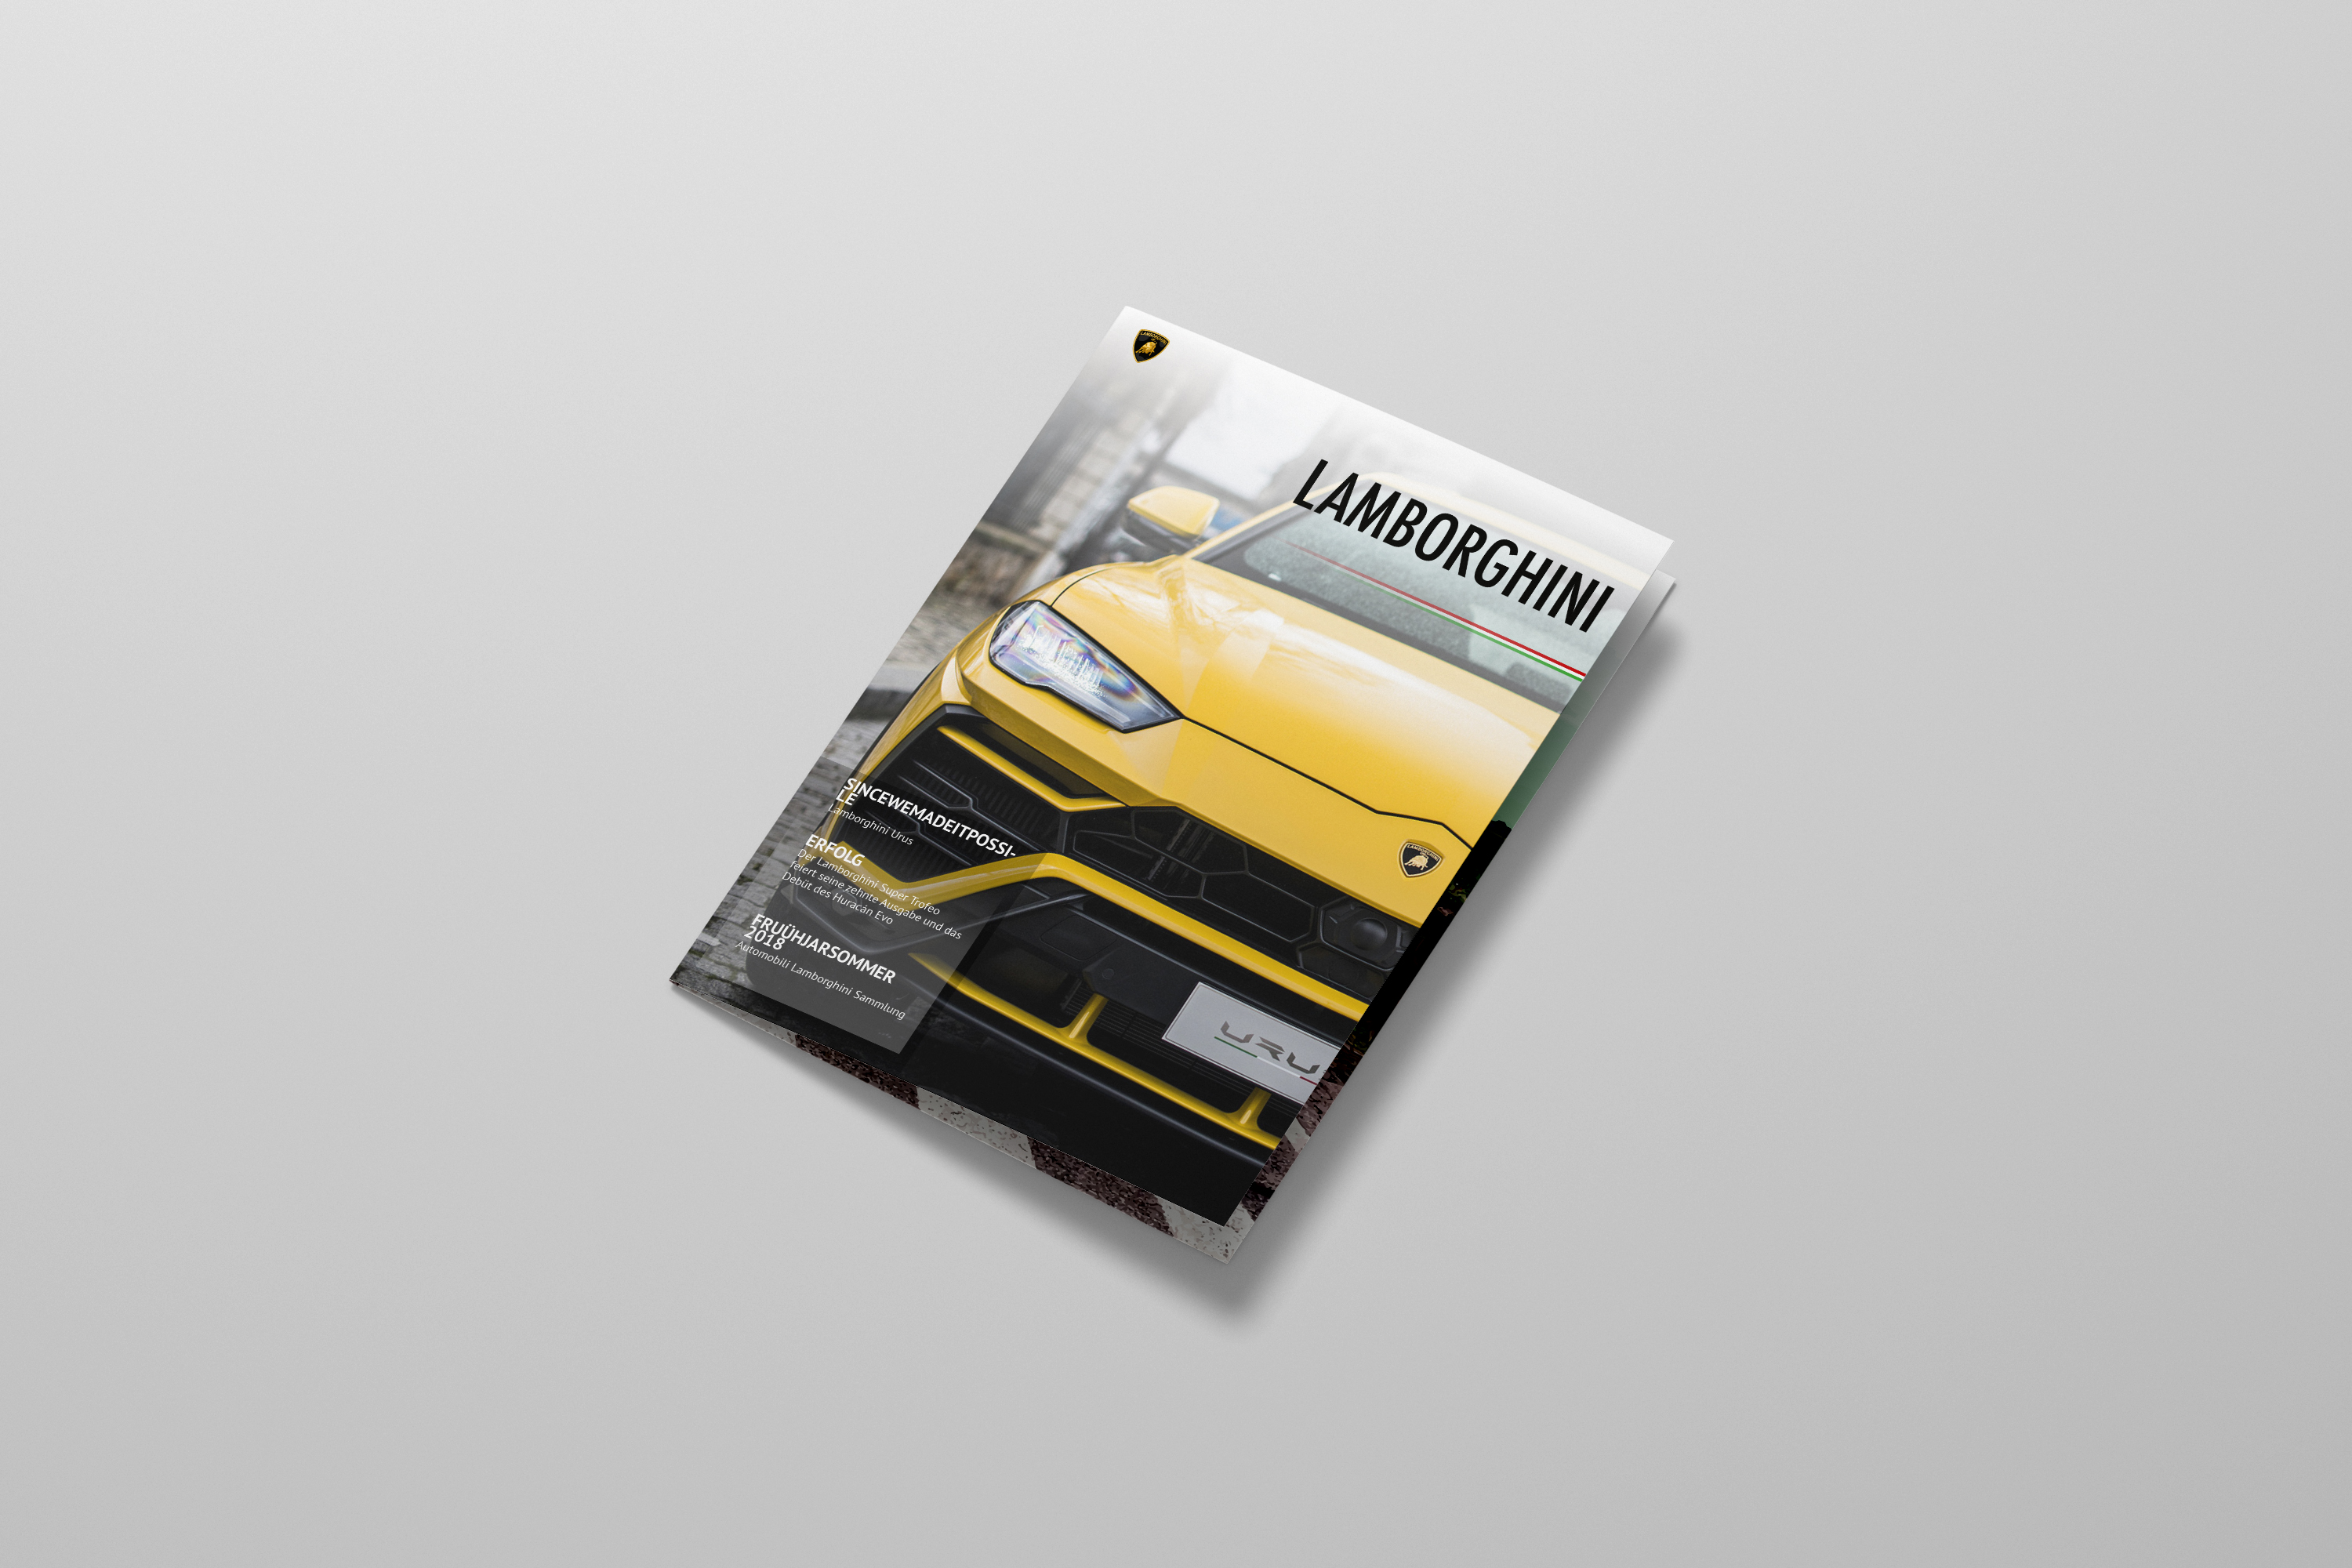 Lamborghini Magazine